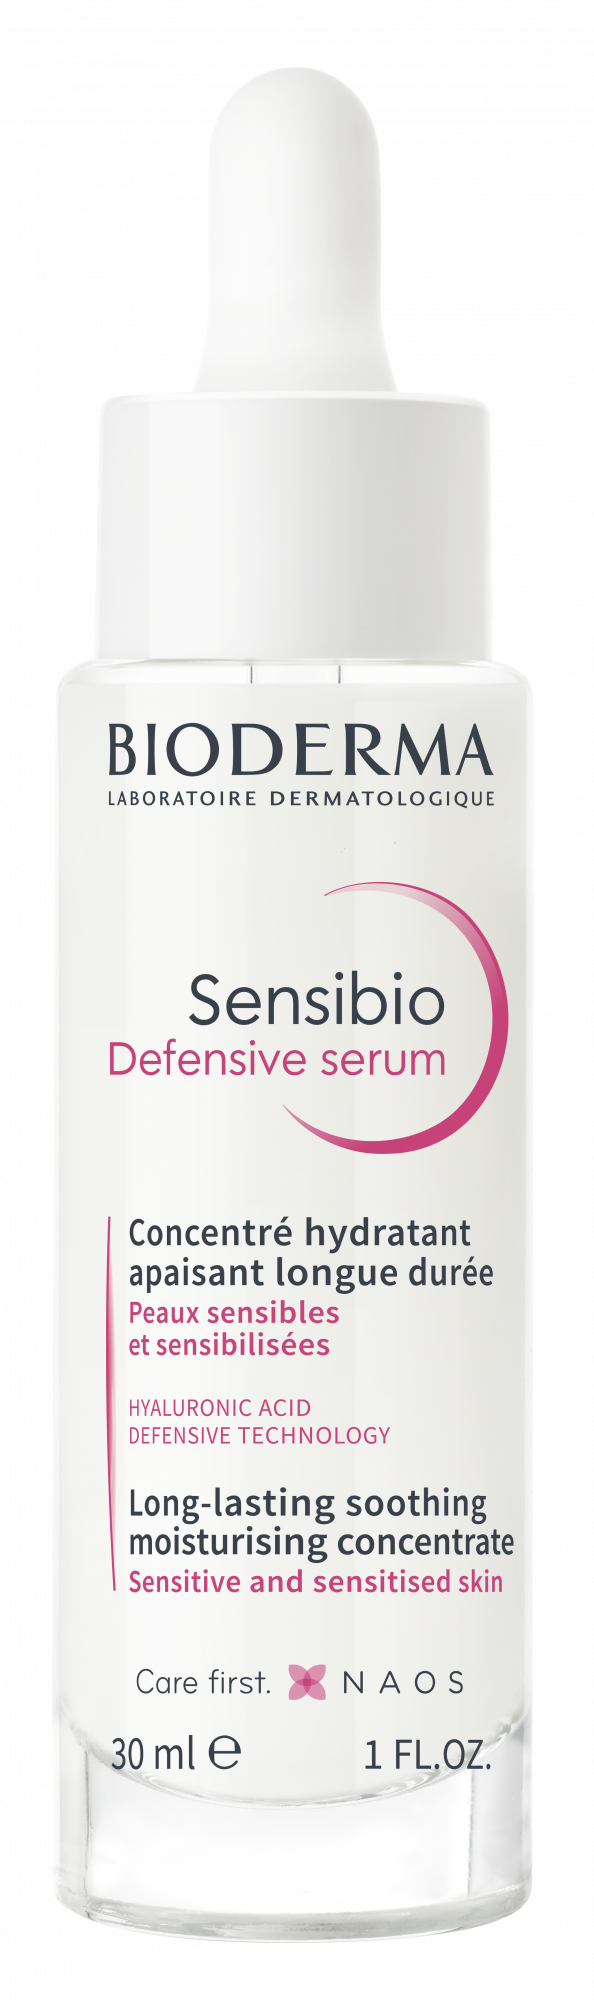 Bioderma Sensibio Defensive Serum Review - Escentual's Blog